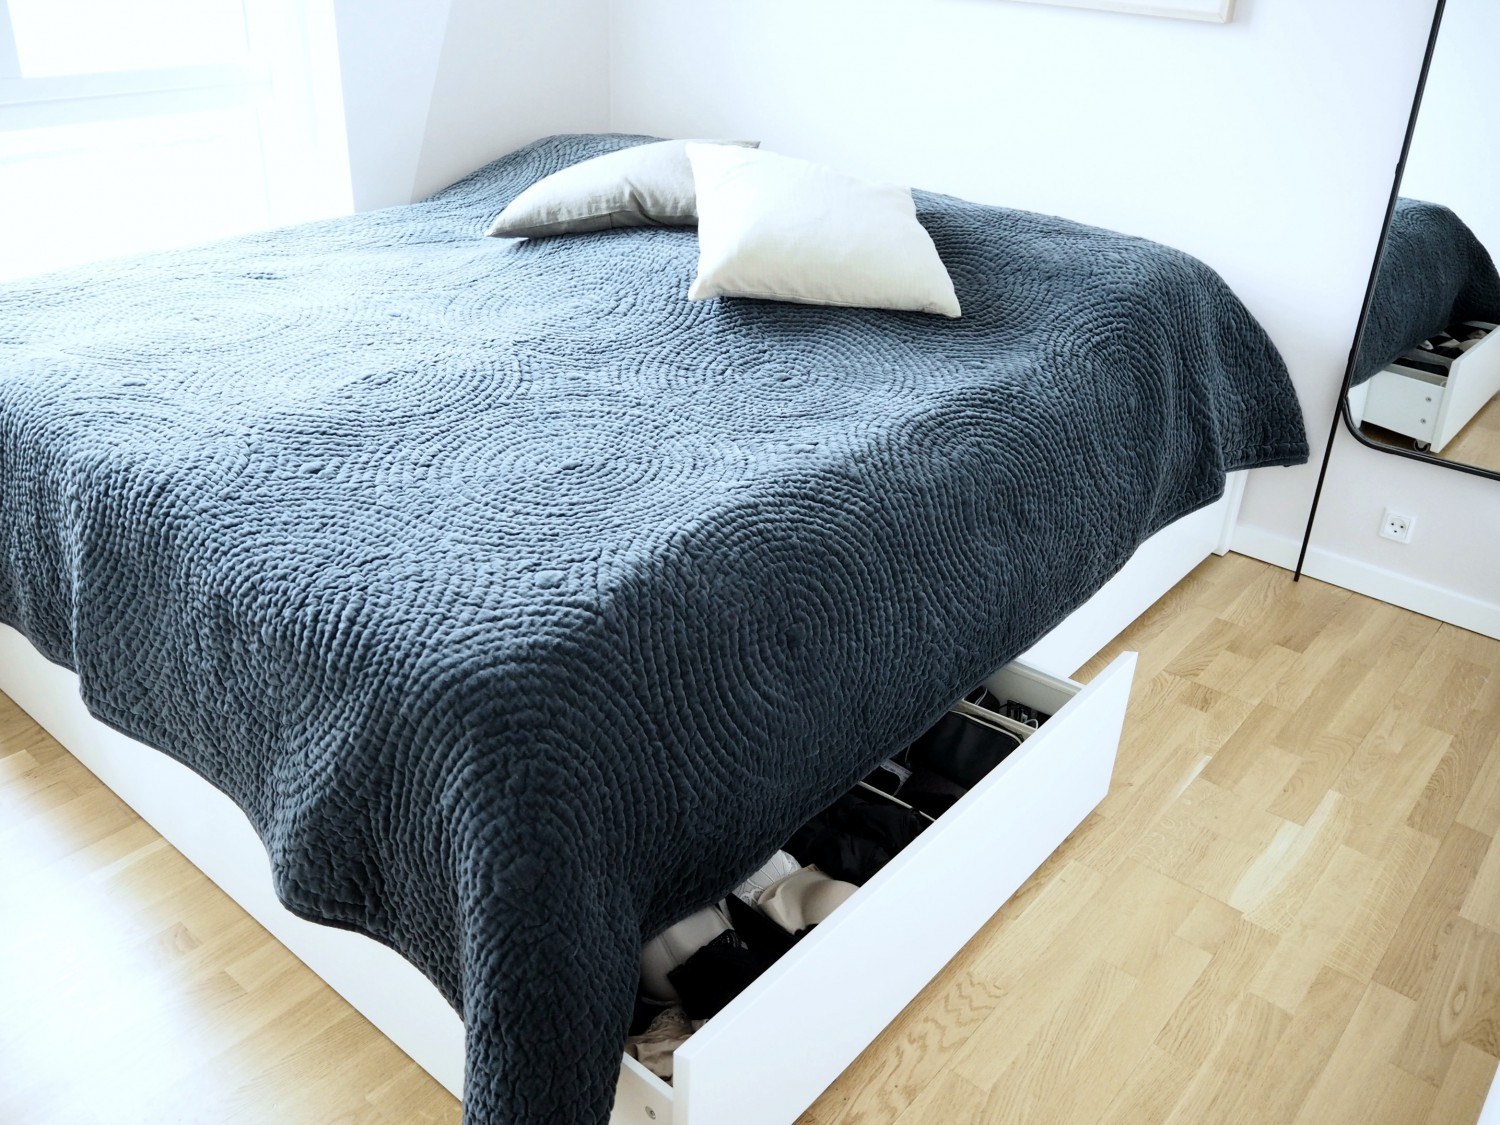 En pæn praktisk) seng. Yes, det findes! – Danica Chloe